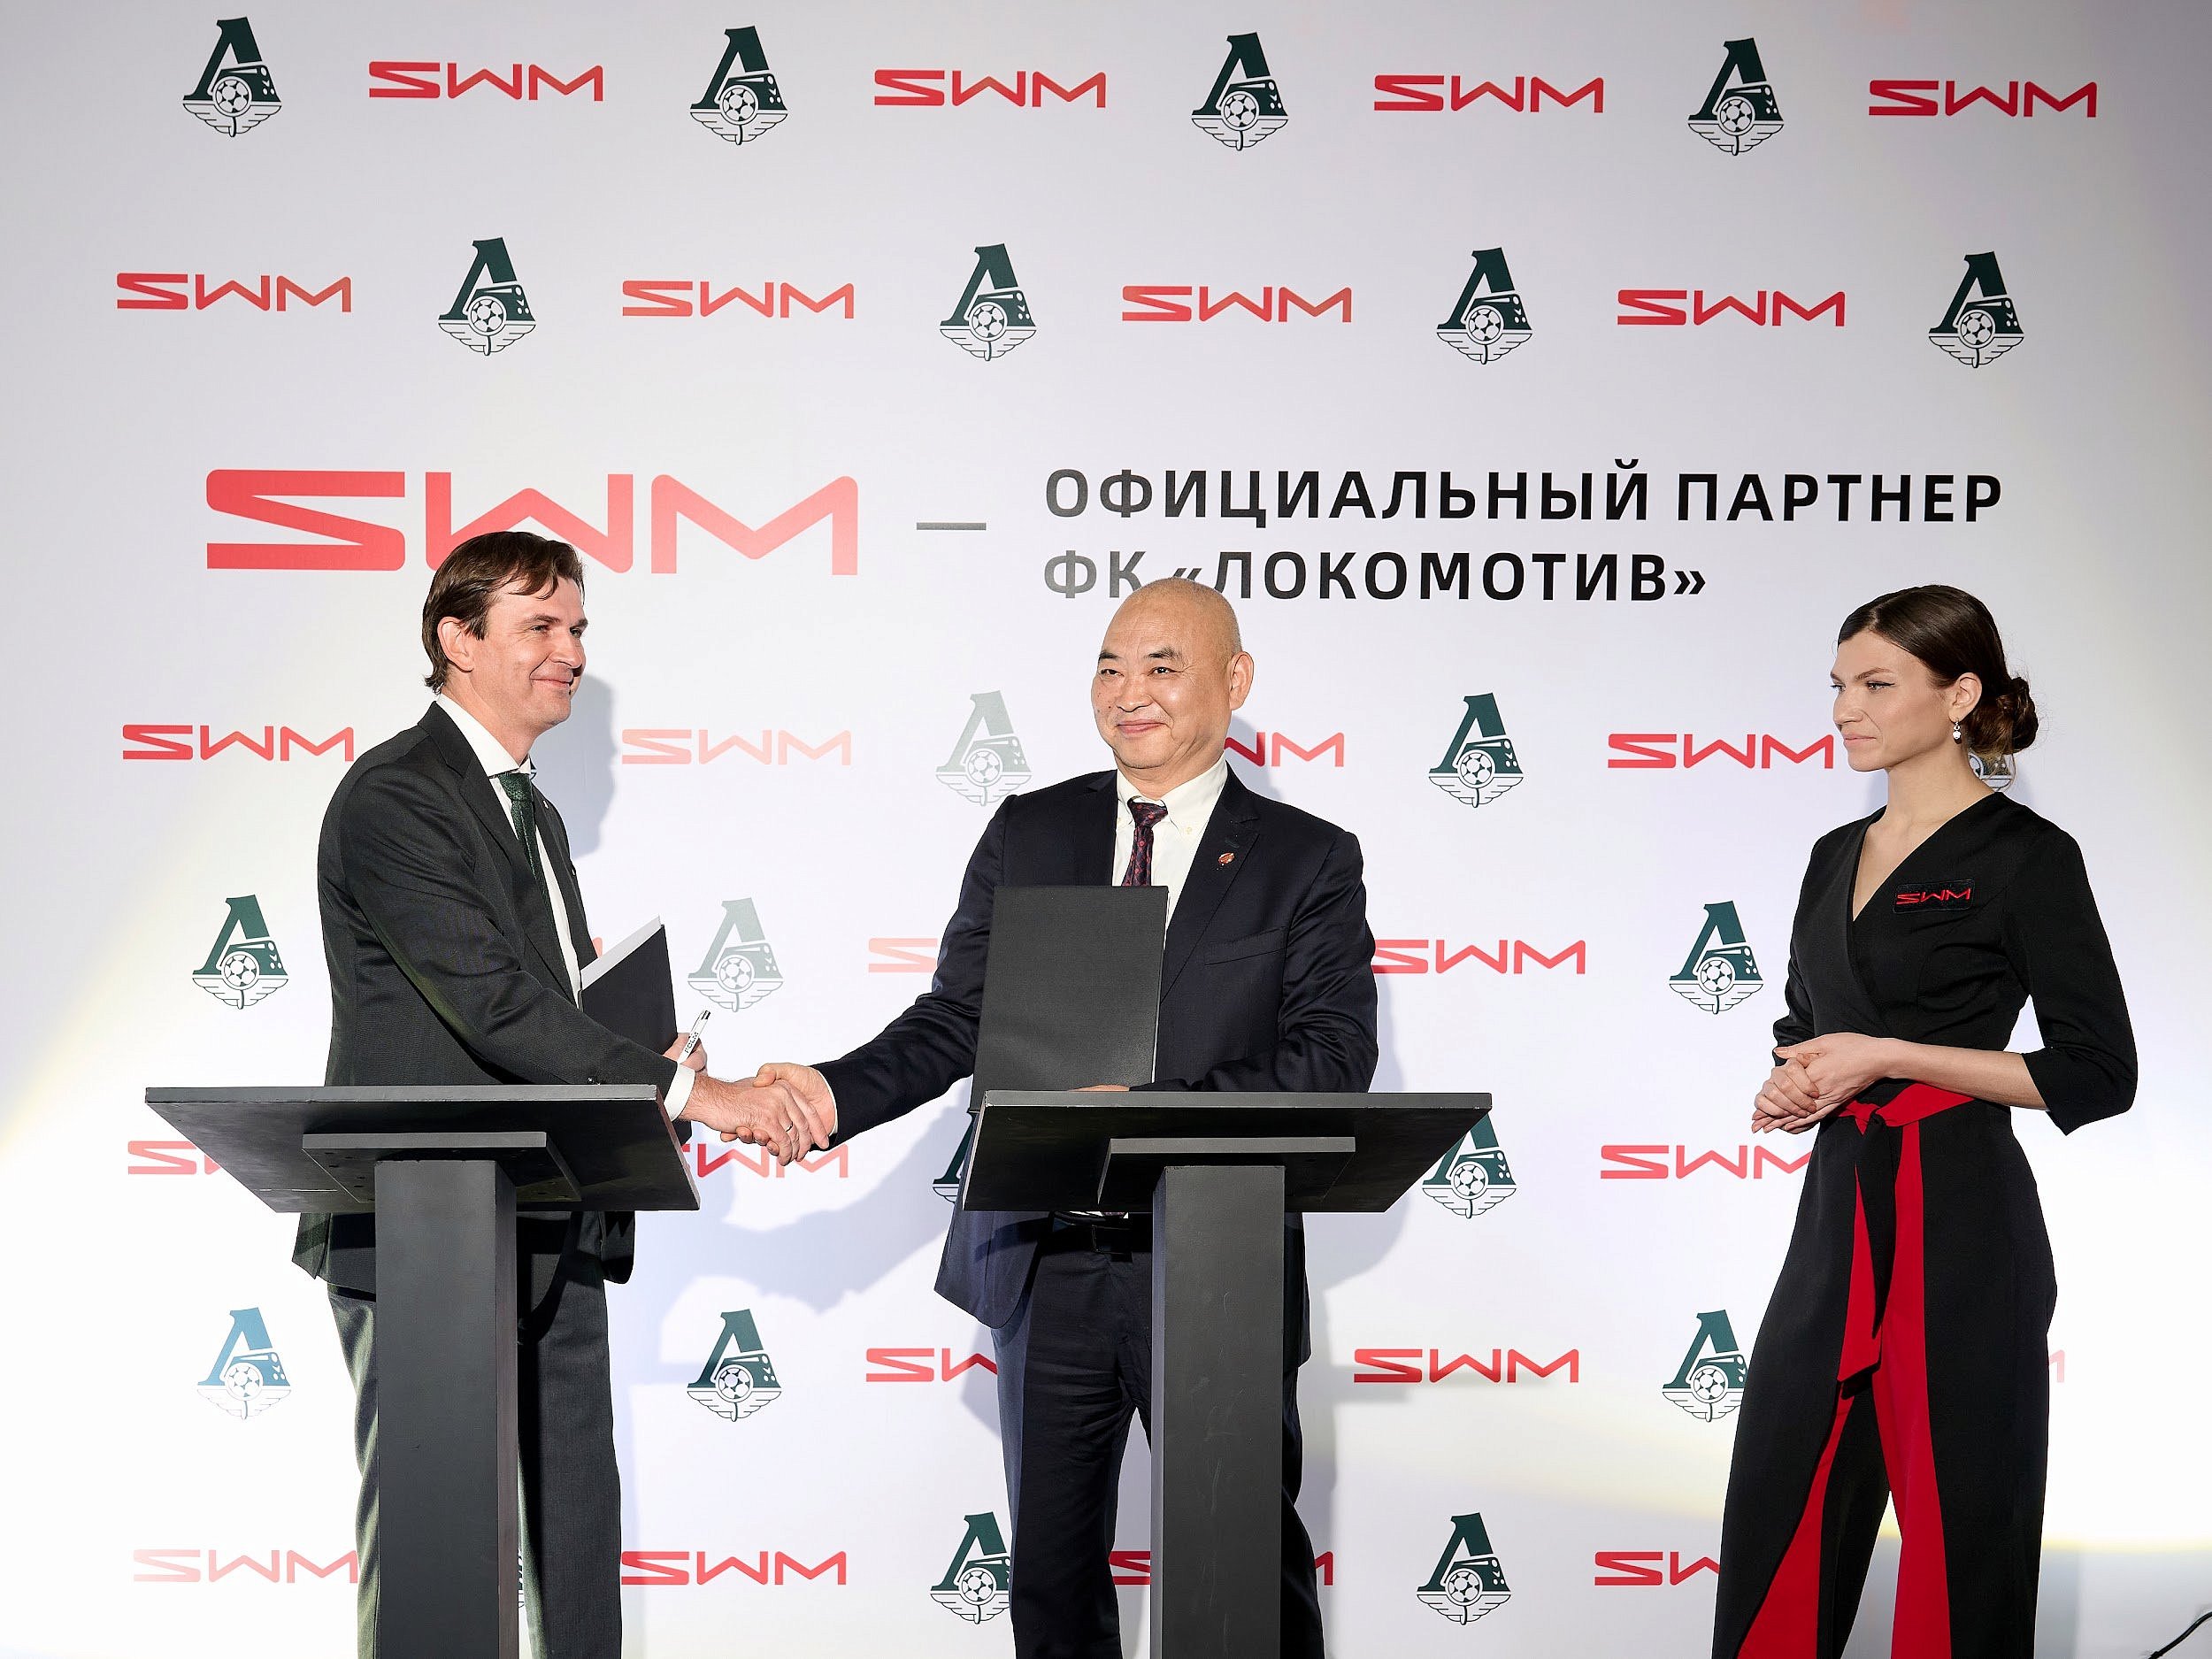 SWM Motors подписал договор о партнерстве с ФК «Локомотив»